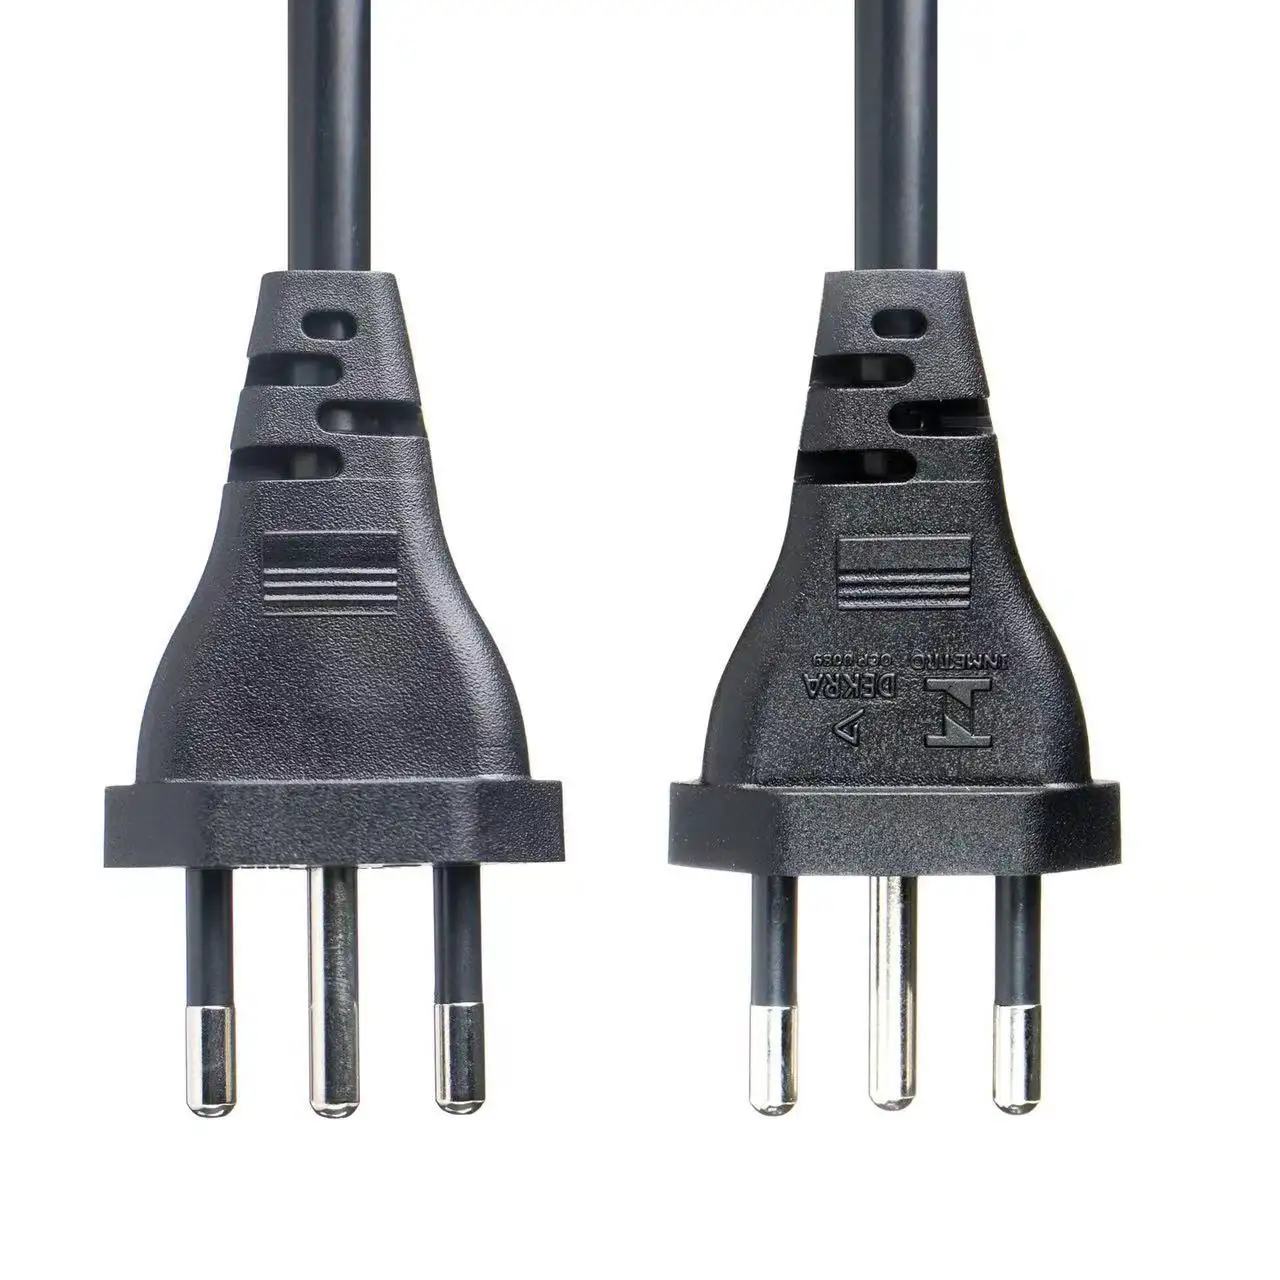 Novo 3pin Puro cobre Brasil AC Power Plug Adapter 3 Pin Brasil Converter plug com cabo de certificação Inmetro para computador